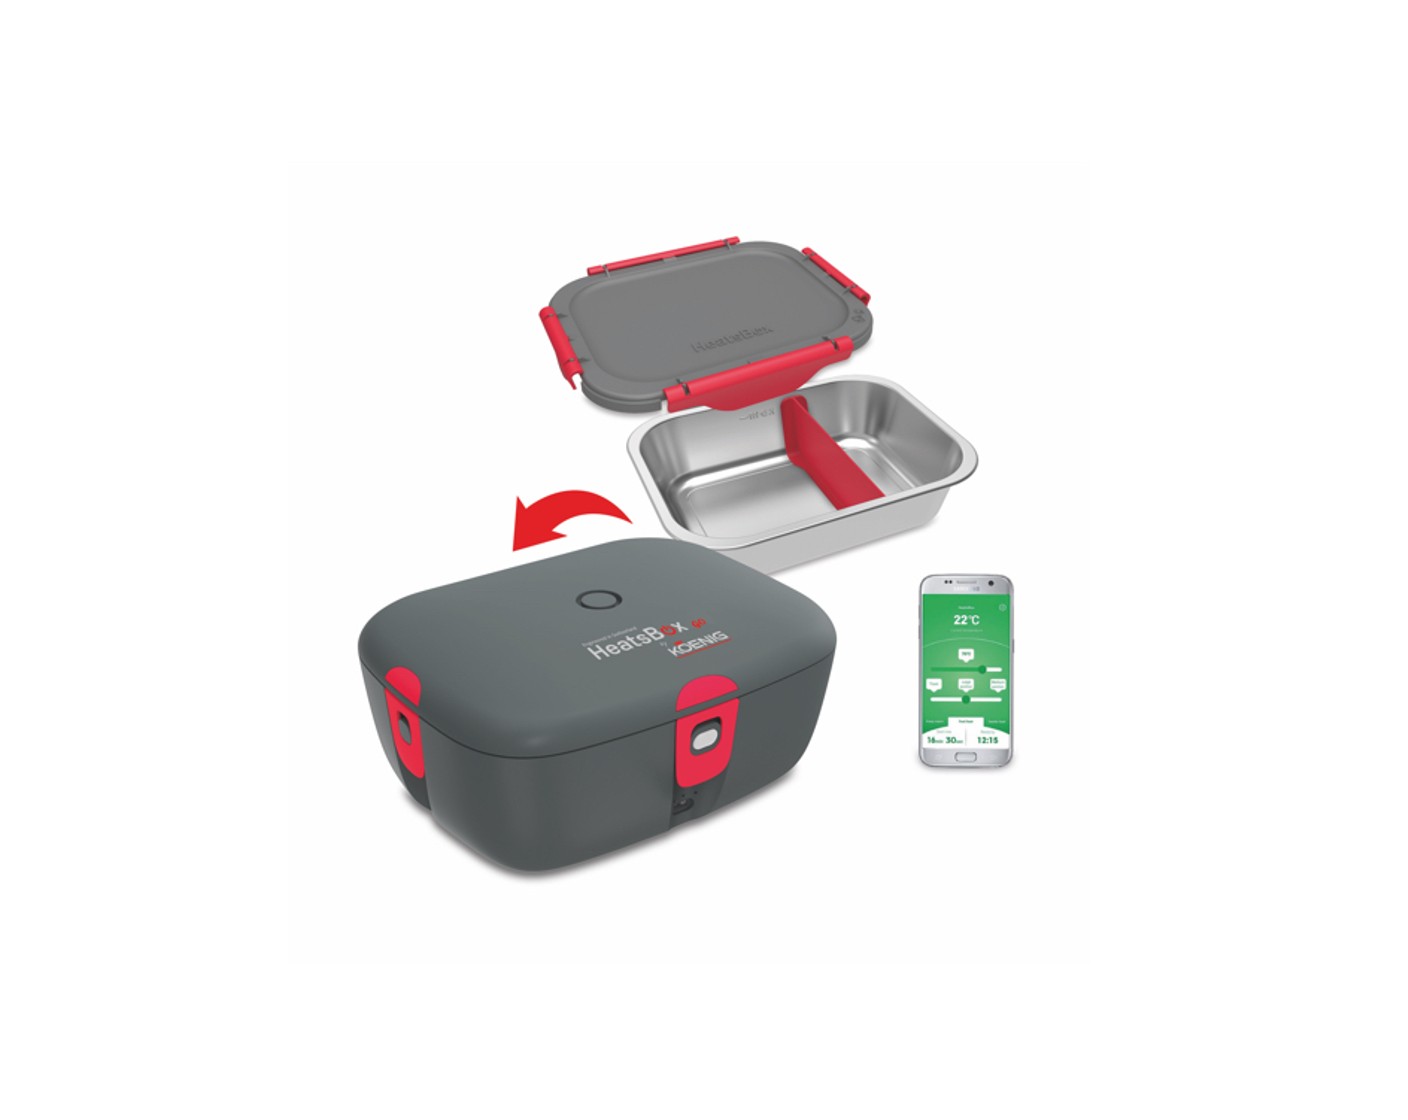 KOENIG HeatsBox pro, die weltweit erste heizbare Lunchbox